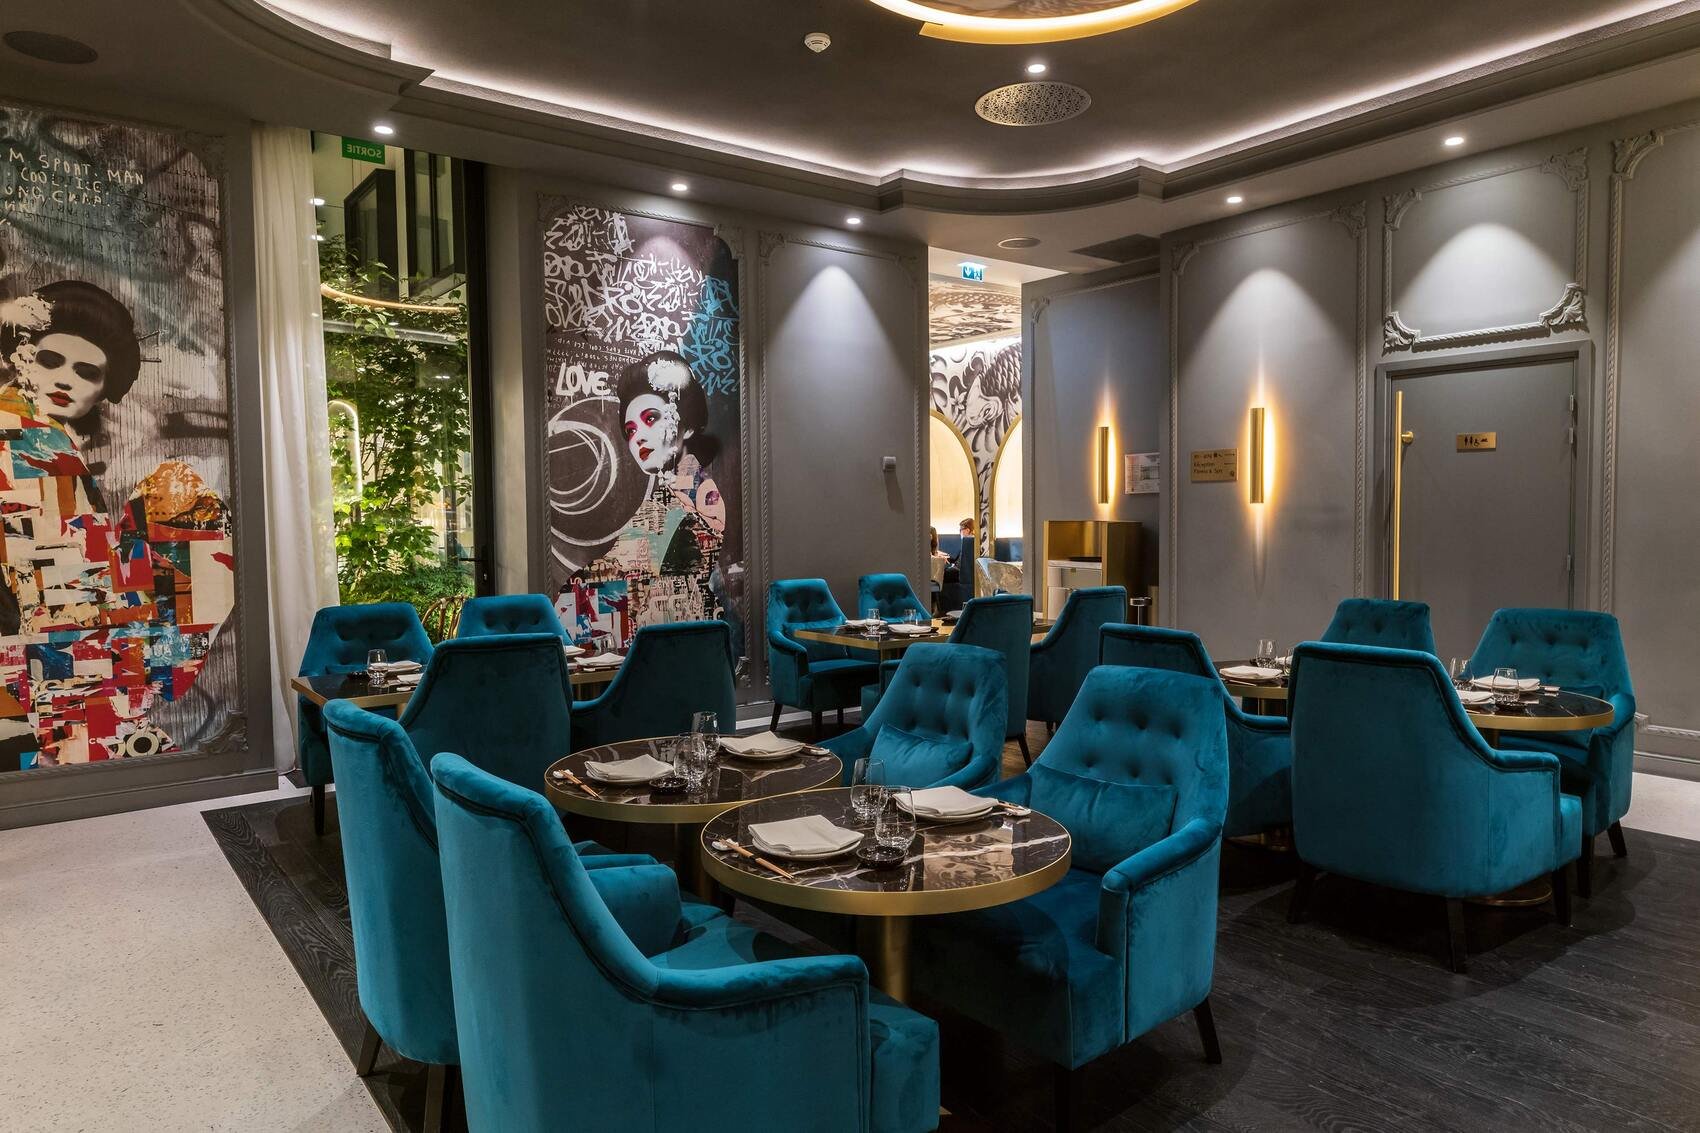 Hôtel de luxe - Maison Albar Hotels Le Vendome 5 étoiles - bar restaurant Yakuza cuisine japonaise Chef Olivier Da Costa